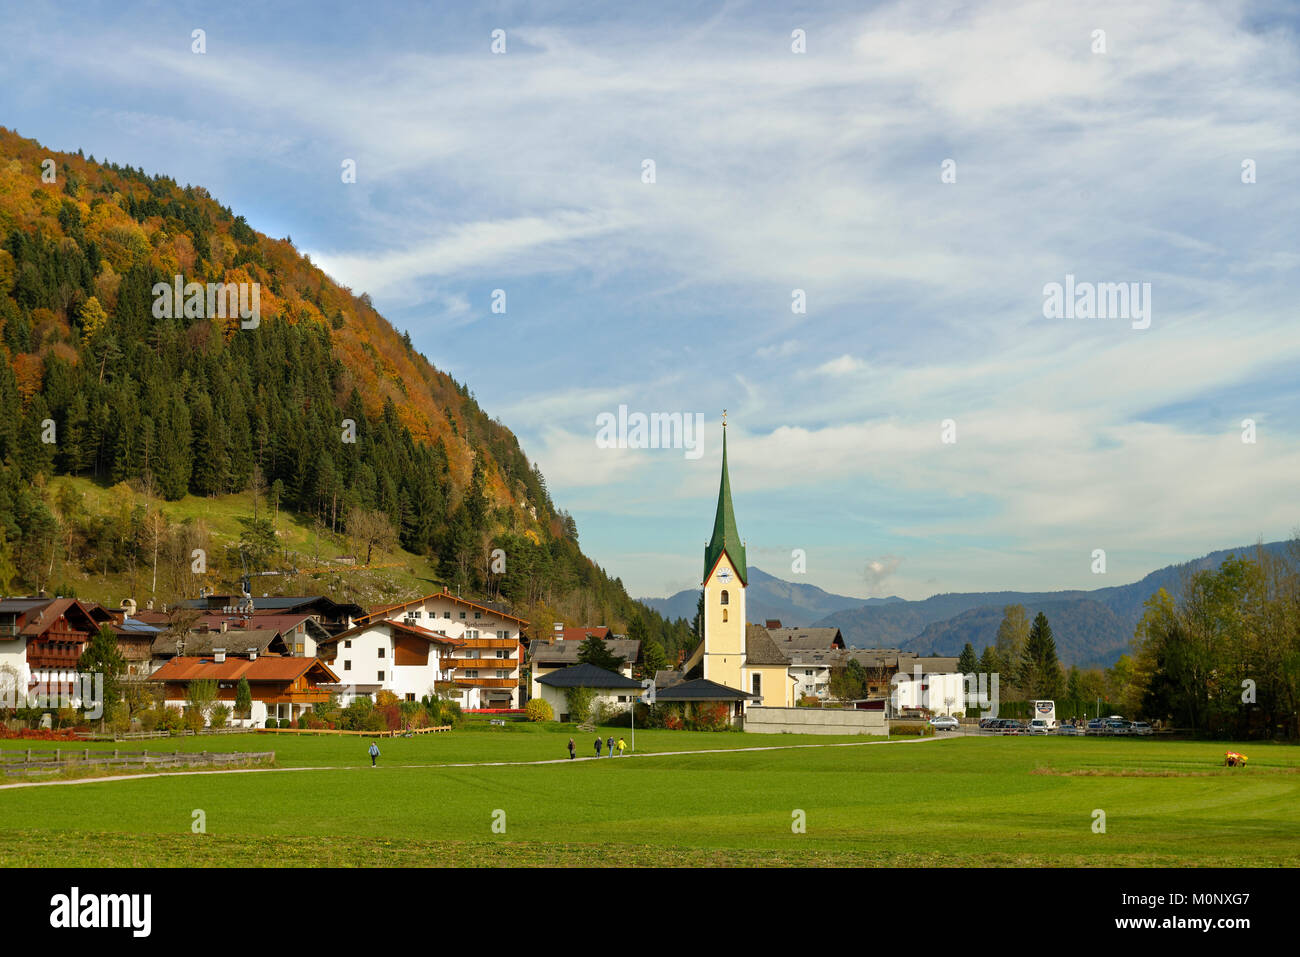 Vue de village avec église paroissiale Johannes le Baptiste en automne, Walchsee, Tyrol, Autriche,Kaiserwinkl Banque D'Images